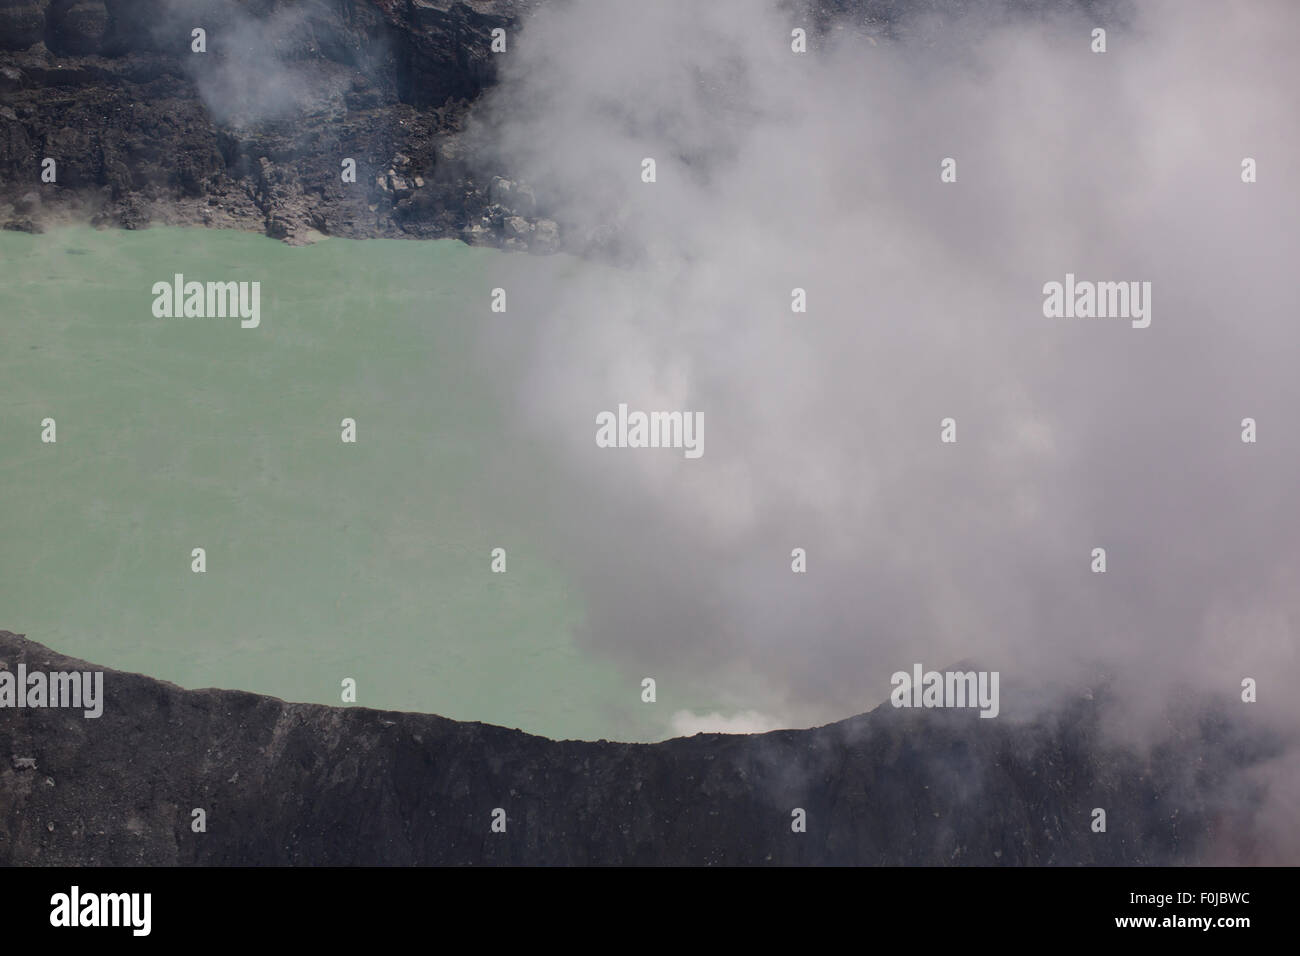 Fumarola il fumo sopra il vulcano Poas in Costa Rica nel 2012. Dettaglio dell'acqua acida cratere con colori turchese. Foto Stock